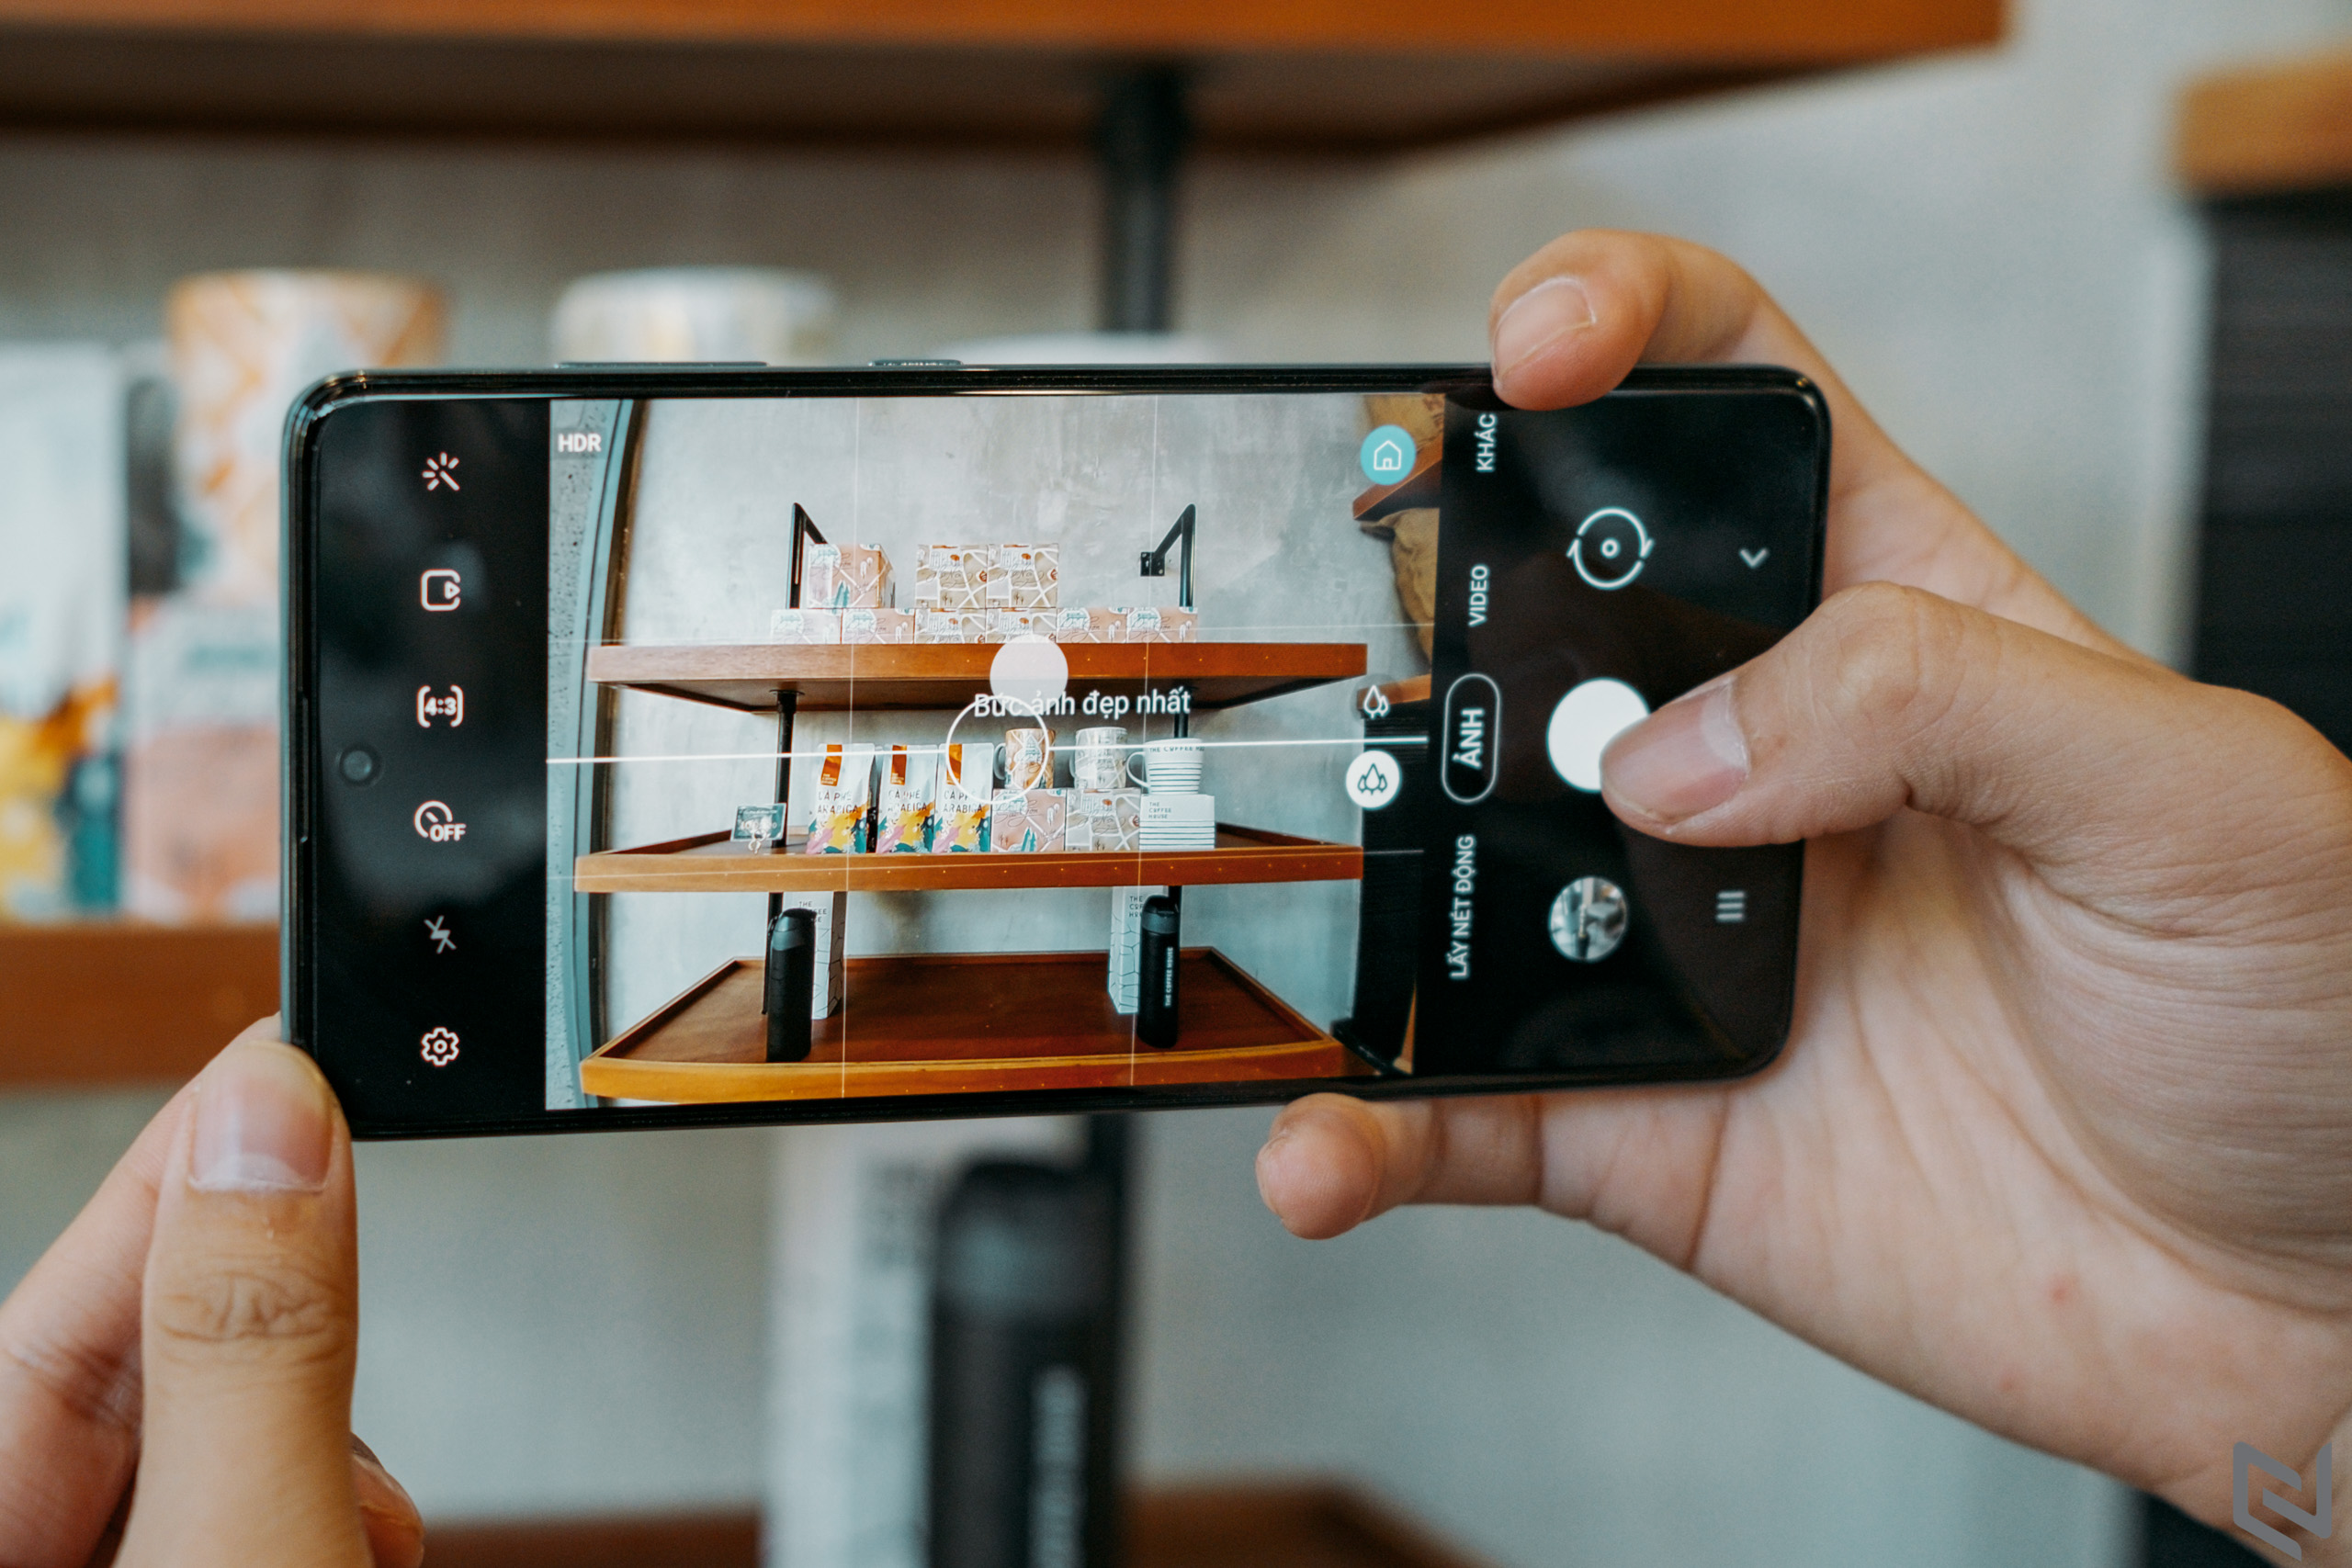 Đánh giá Samsung Galaxy A71: Camera ngon, hiệu năng đỉnh, giờ đã không còn ngán đối thủ nào